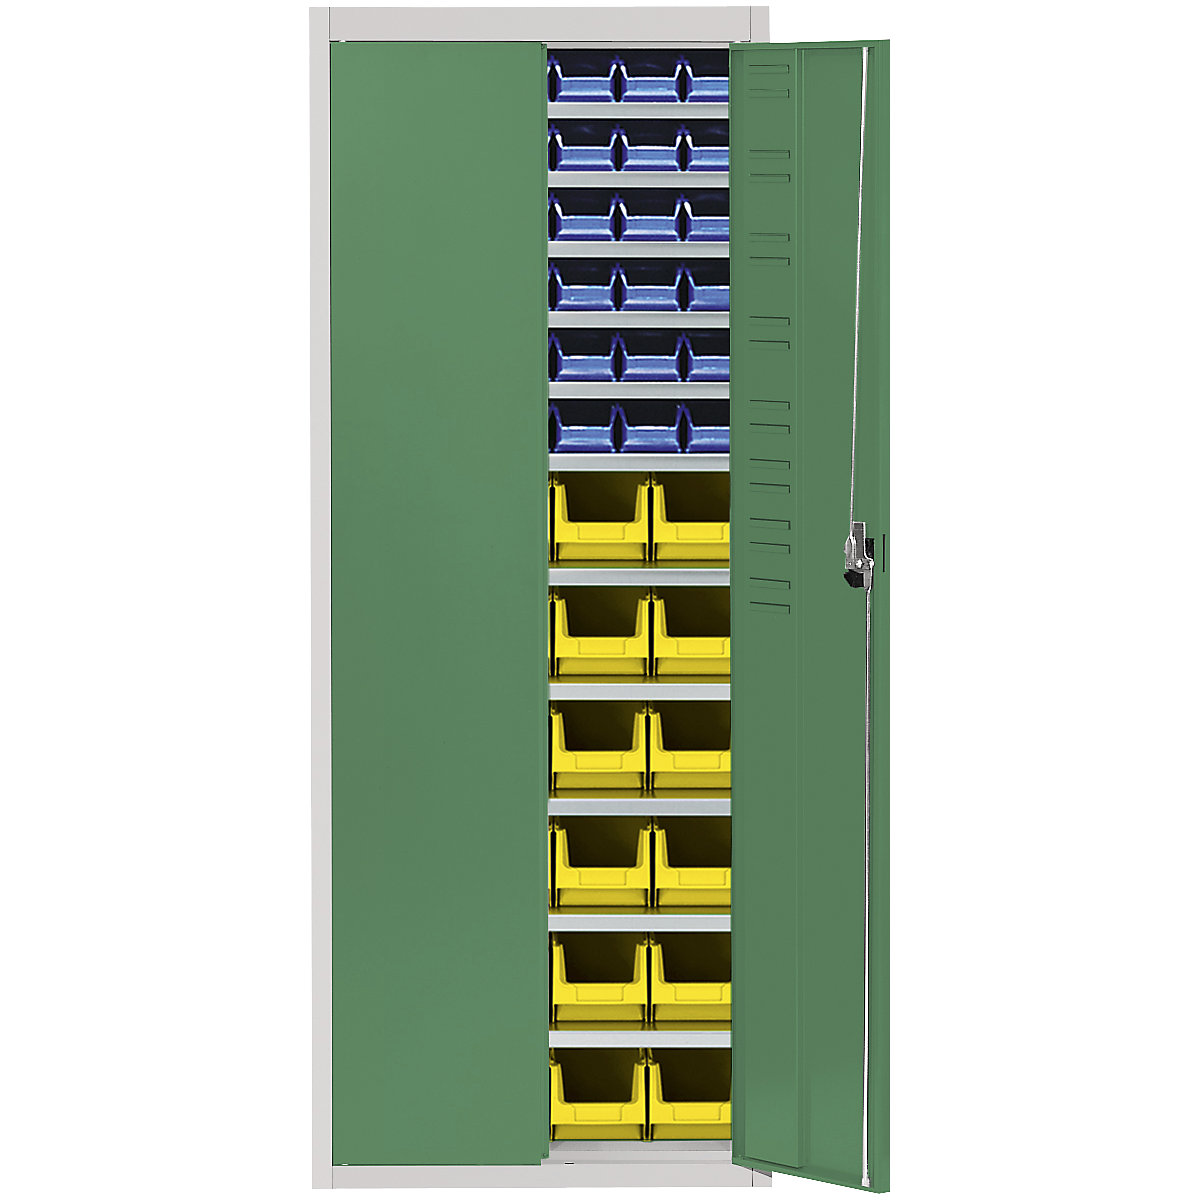 Skladišni ormar s otvorenim skladišnim kutijama – mauser, VxŠxD 1740 x 680 x 280 mm, u dvije boje, korpus u sivoj boji, vrata u zelenoj boji, 60 kutija-16